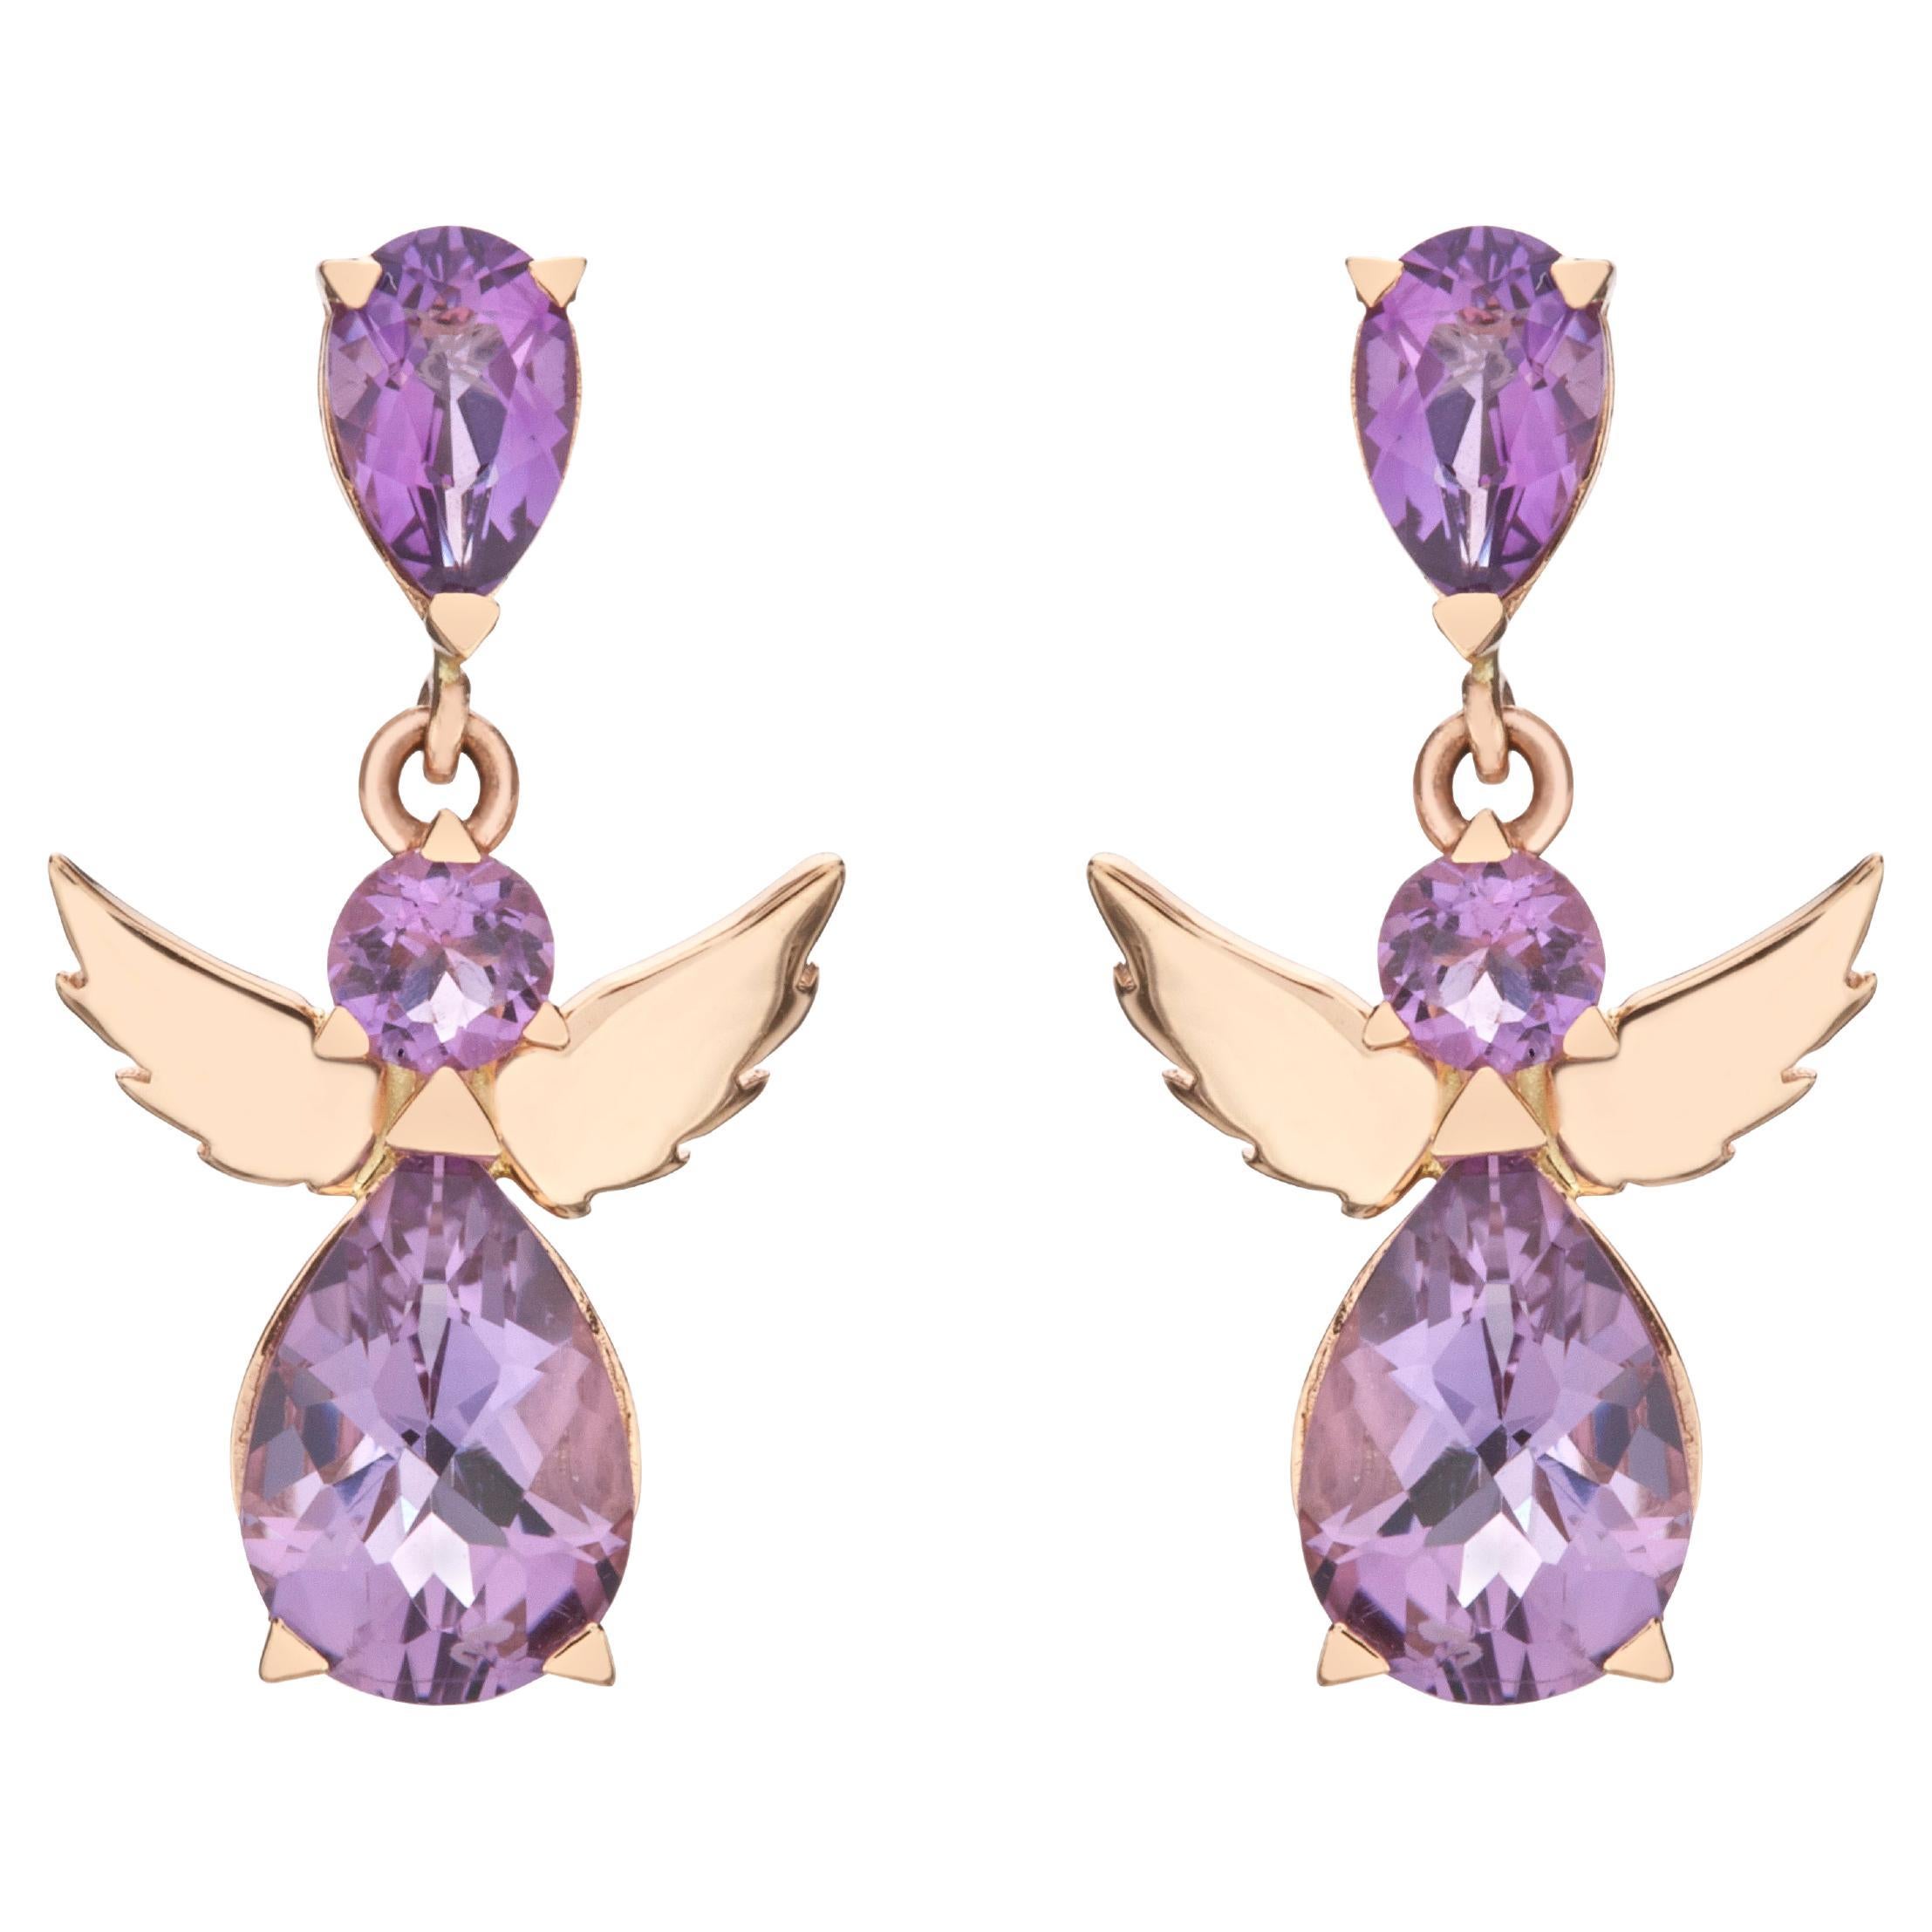 Boucles d'oreilles en forme d'ange en or rose 18 carats avec perles et améthyste violette ronde cadeau